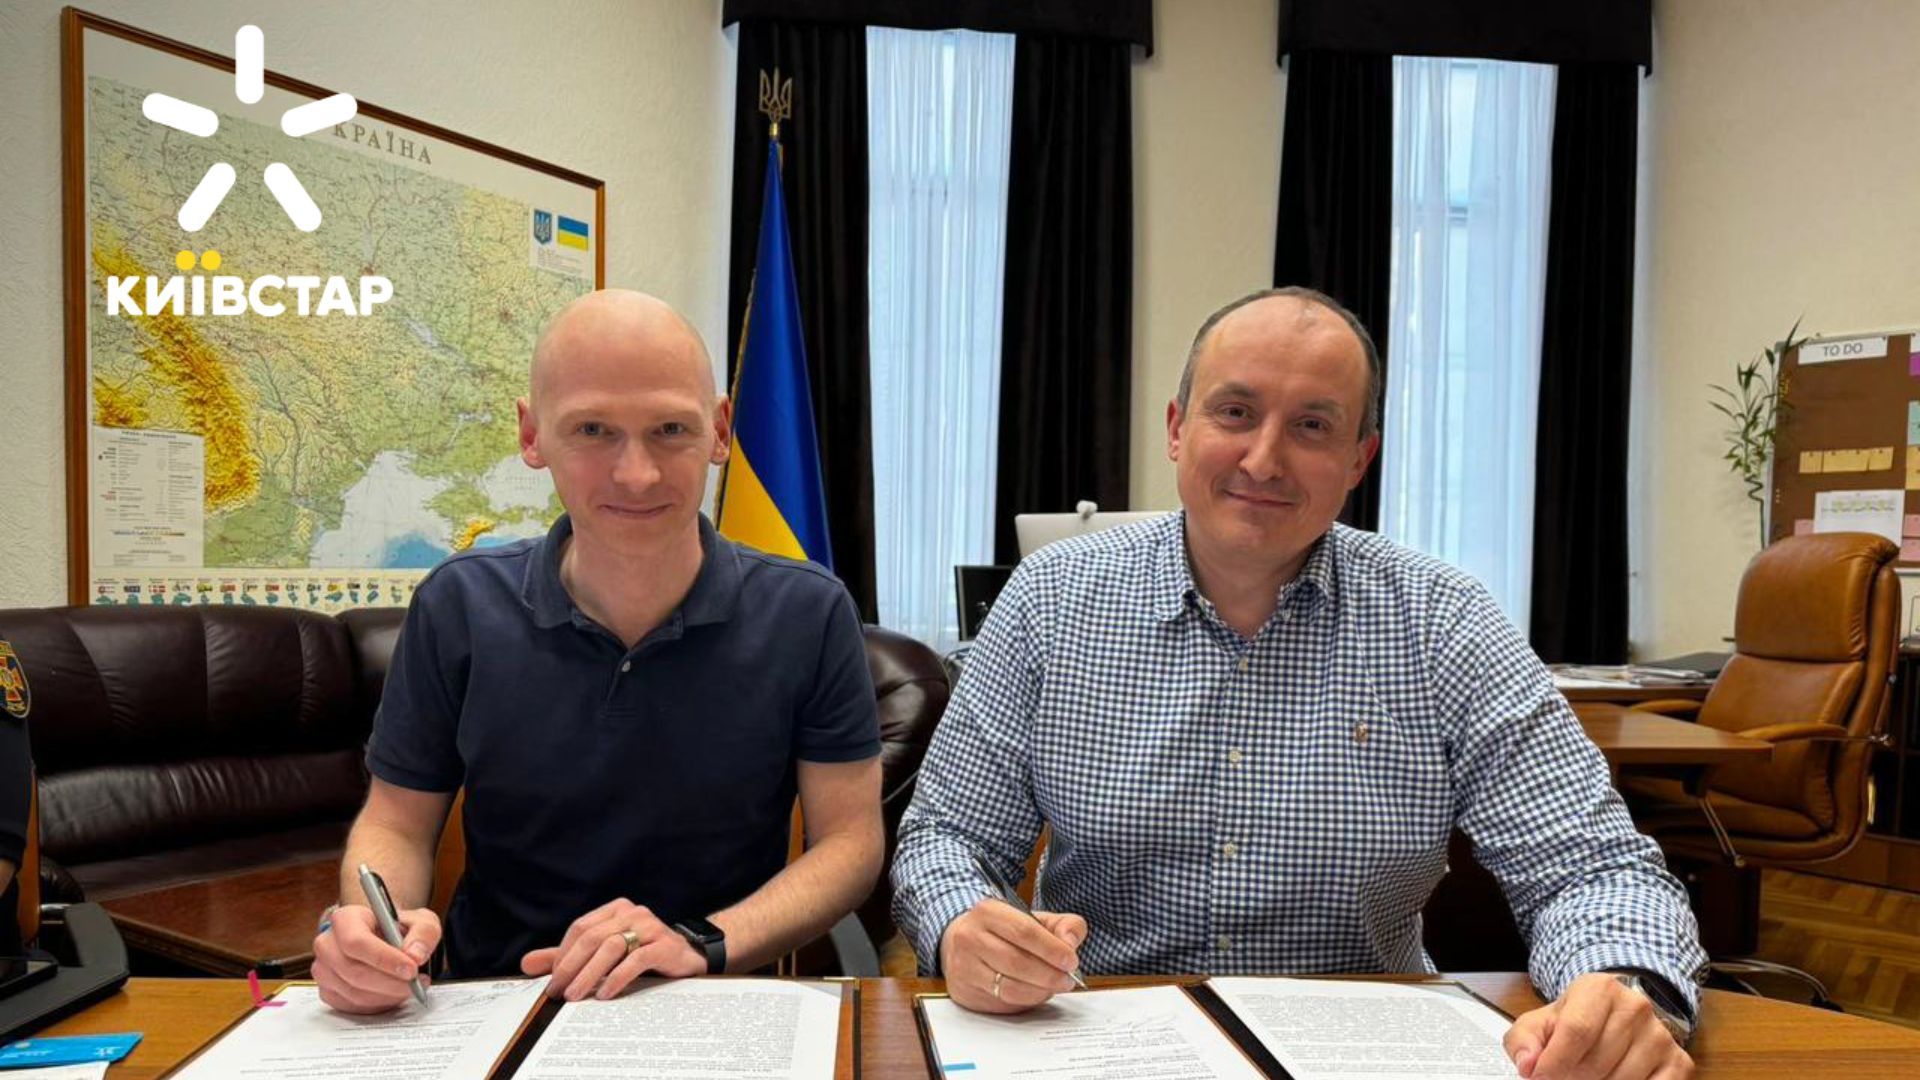 Киевстар и Государственная служба Украины по чрезвычайным ситуациям подписали меморандум о сотрудничестве